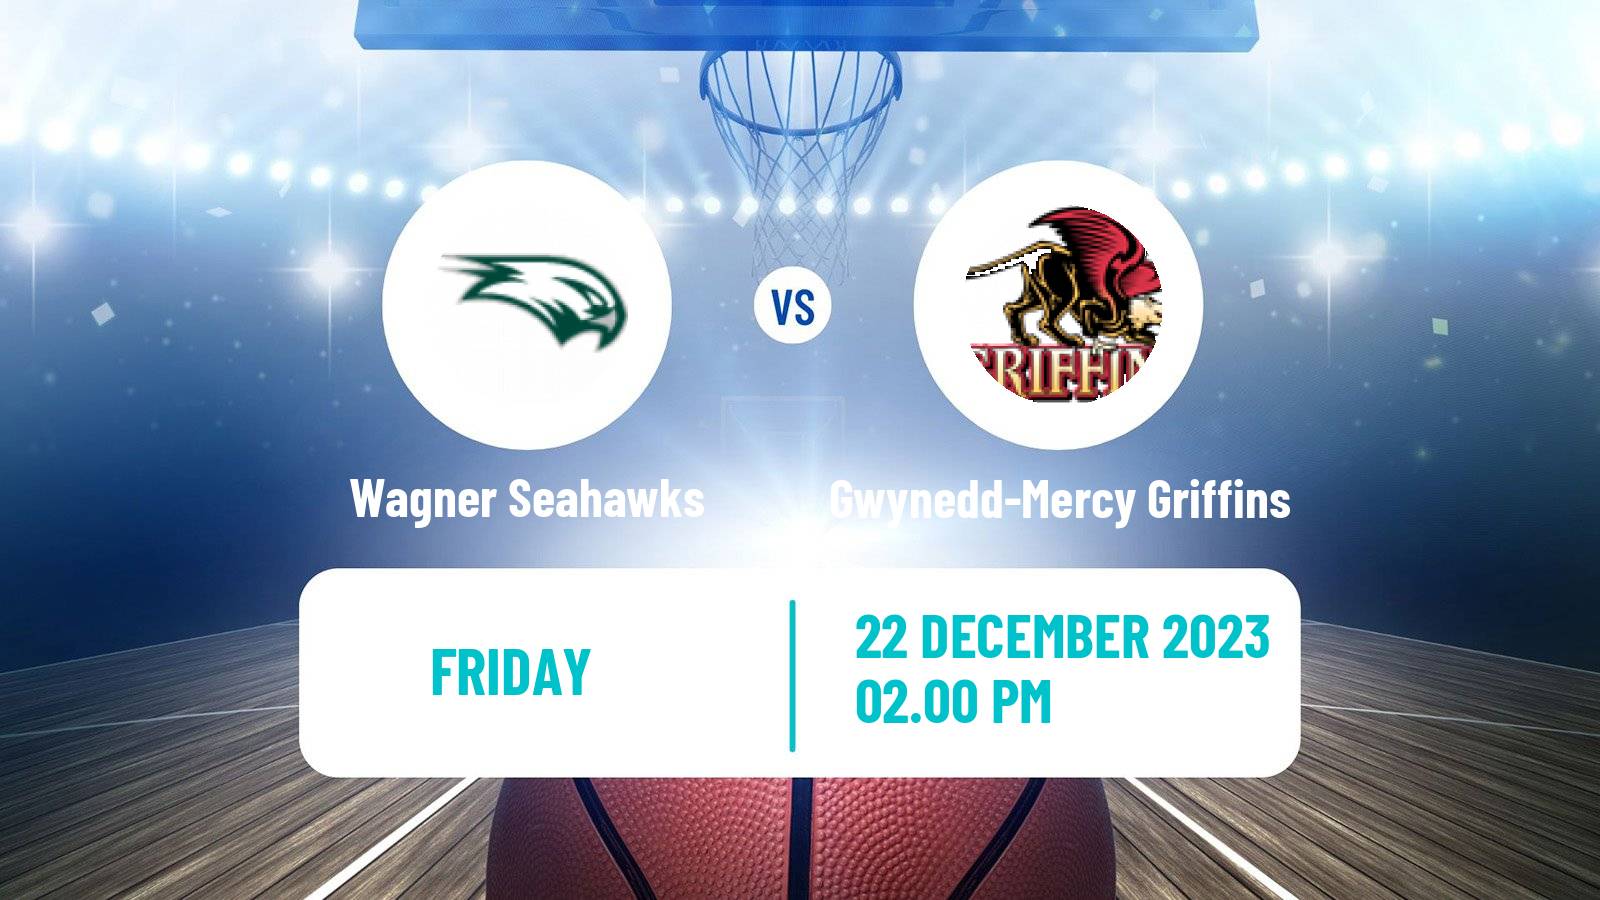 Basketball NCAA College Basketball Wagner Seahawks - Gwynedd-Mercy Griffins